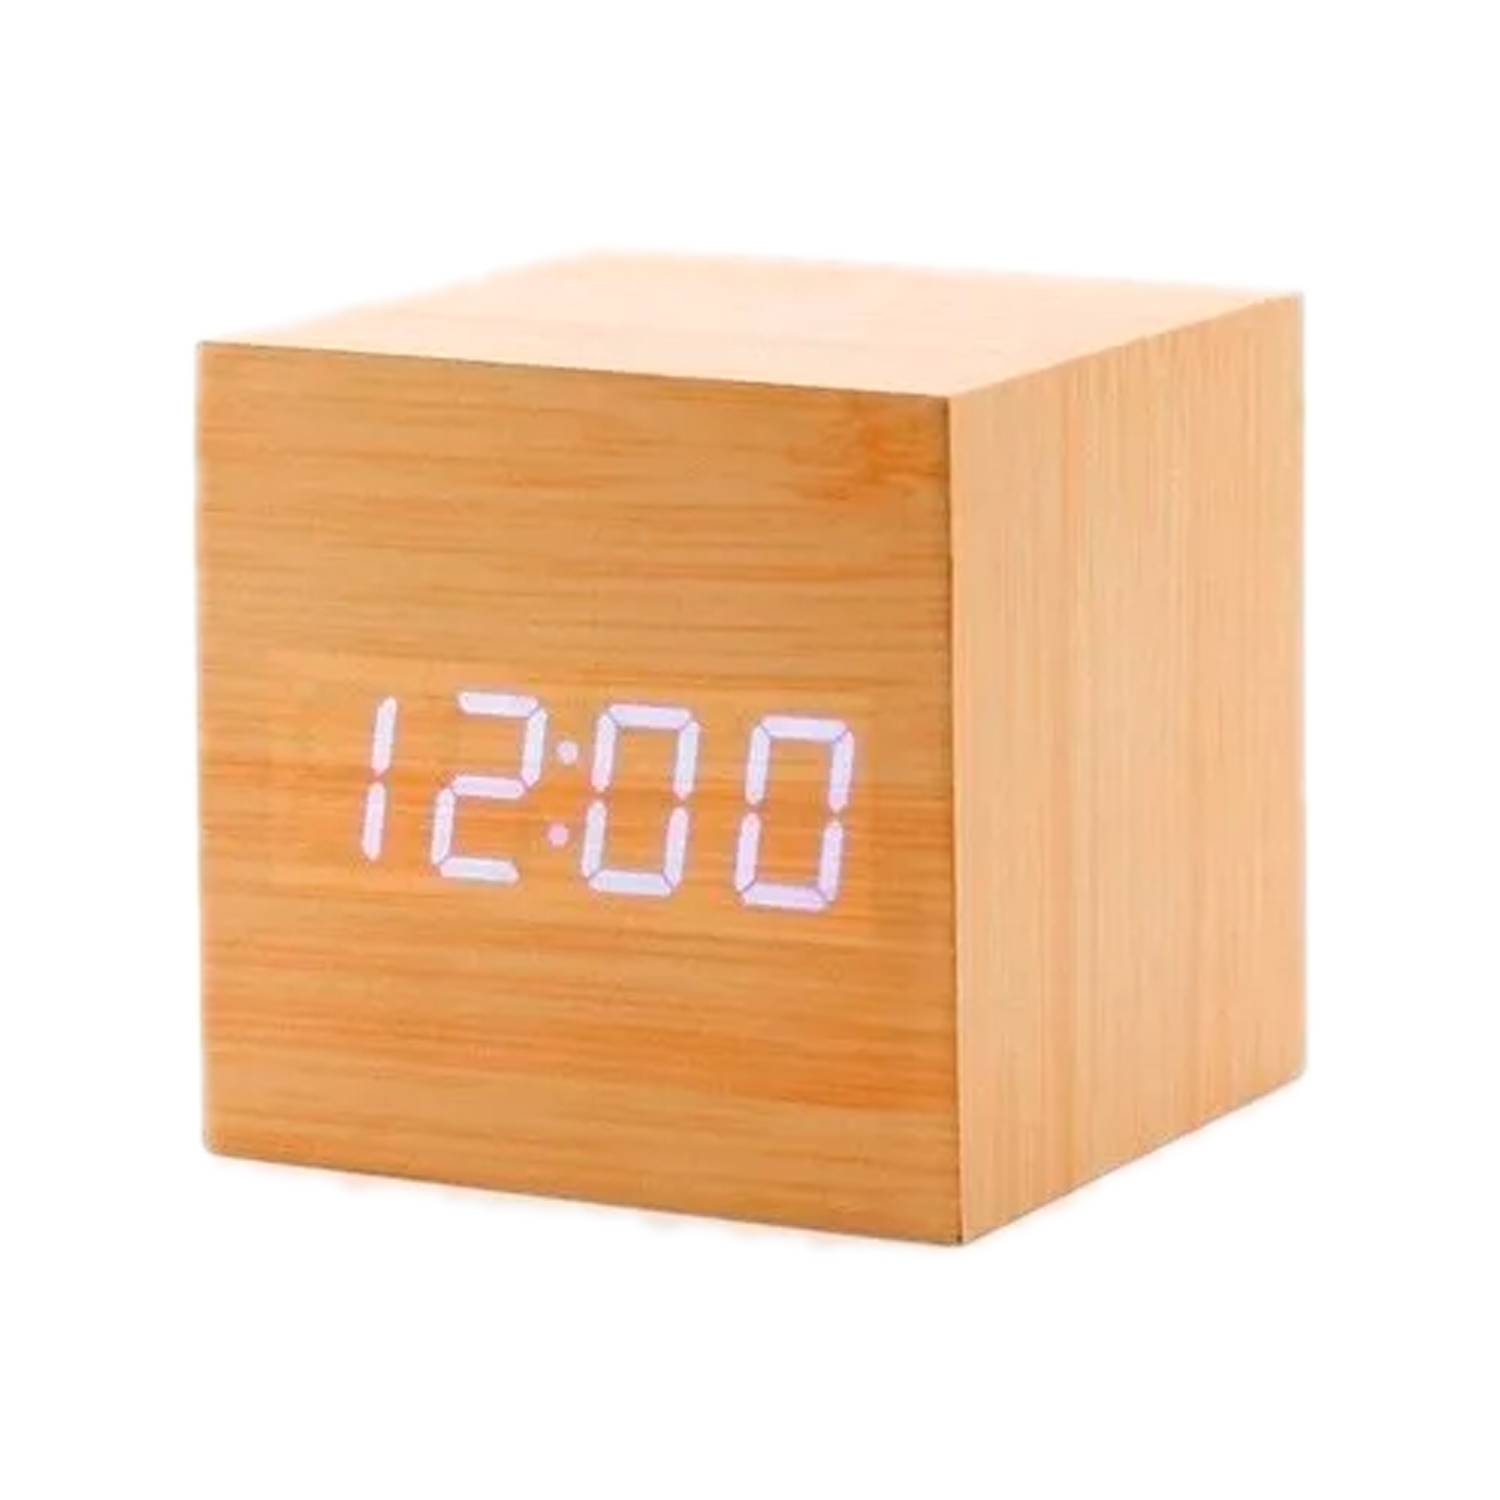 Reloj Pared Digital Kadio KD-3810 Termómetro Fecha Alarma Calendario